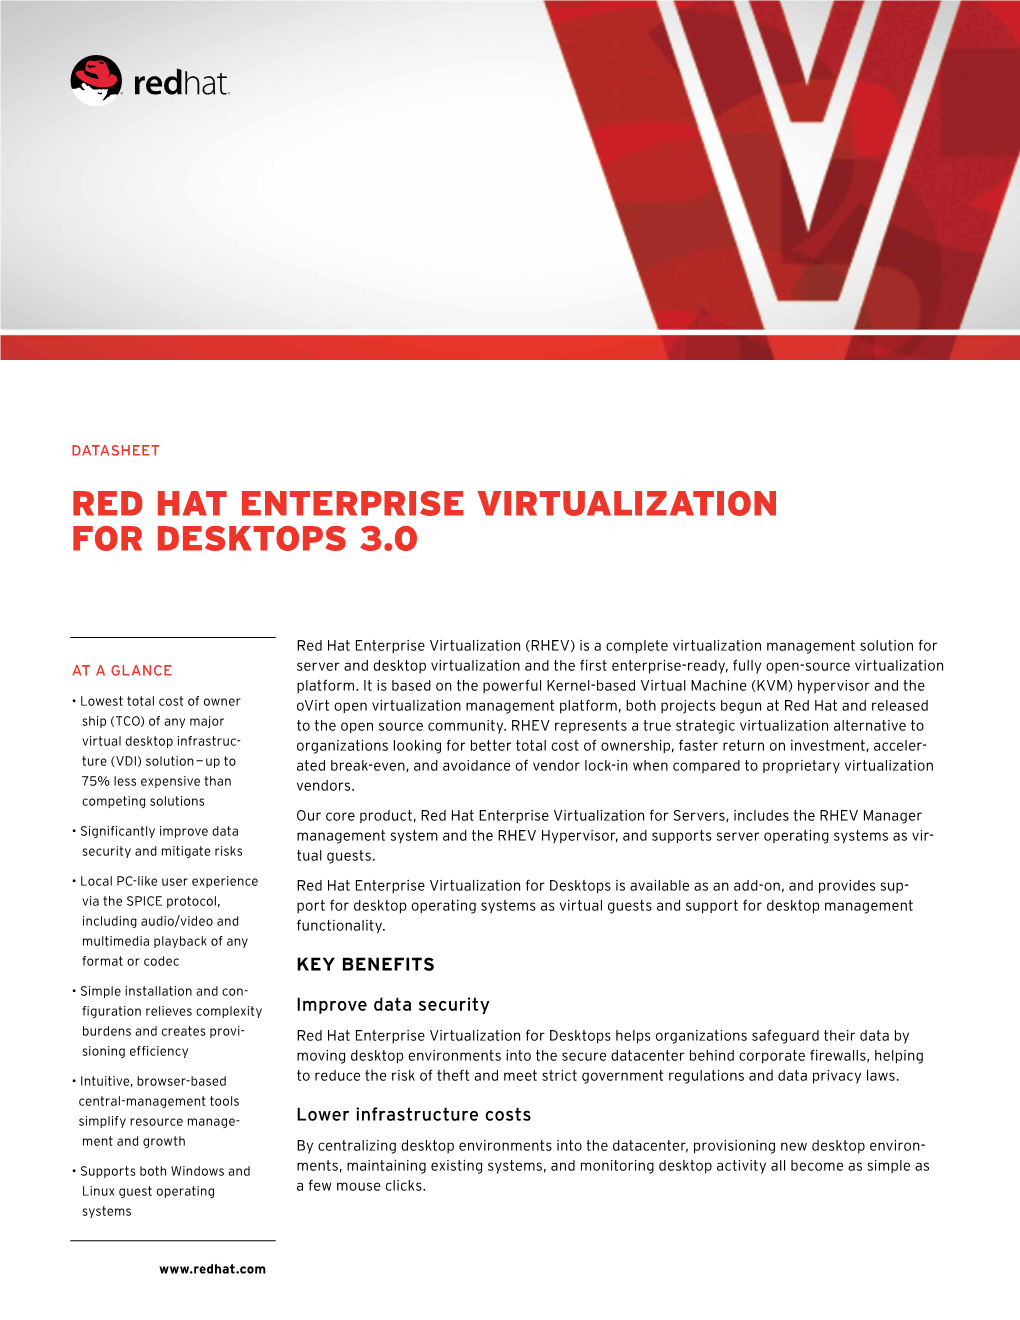 Red Hat Enterprise Virtualization for Desktops 3.0